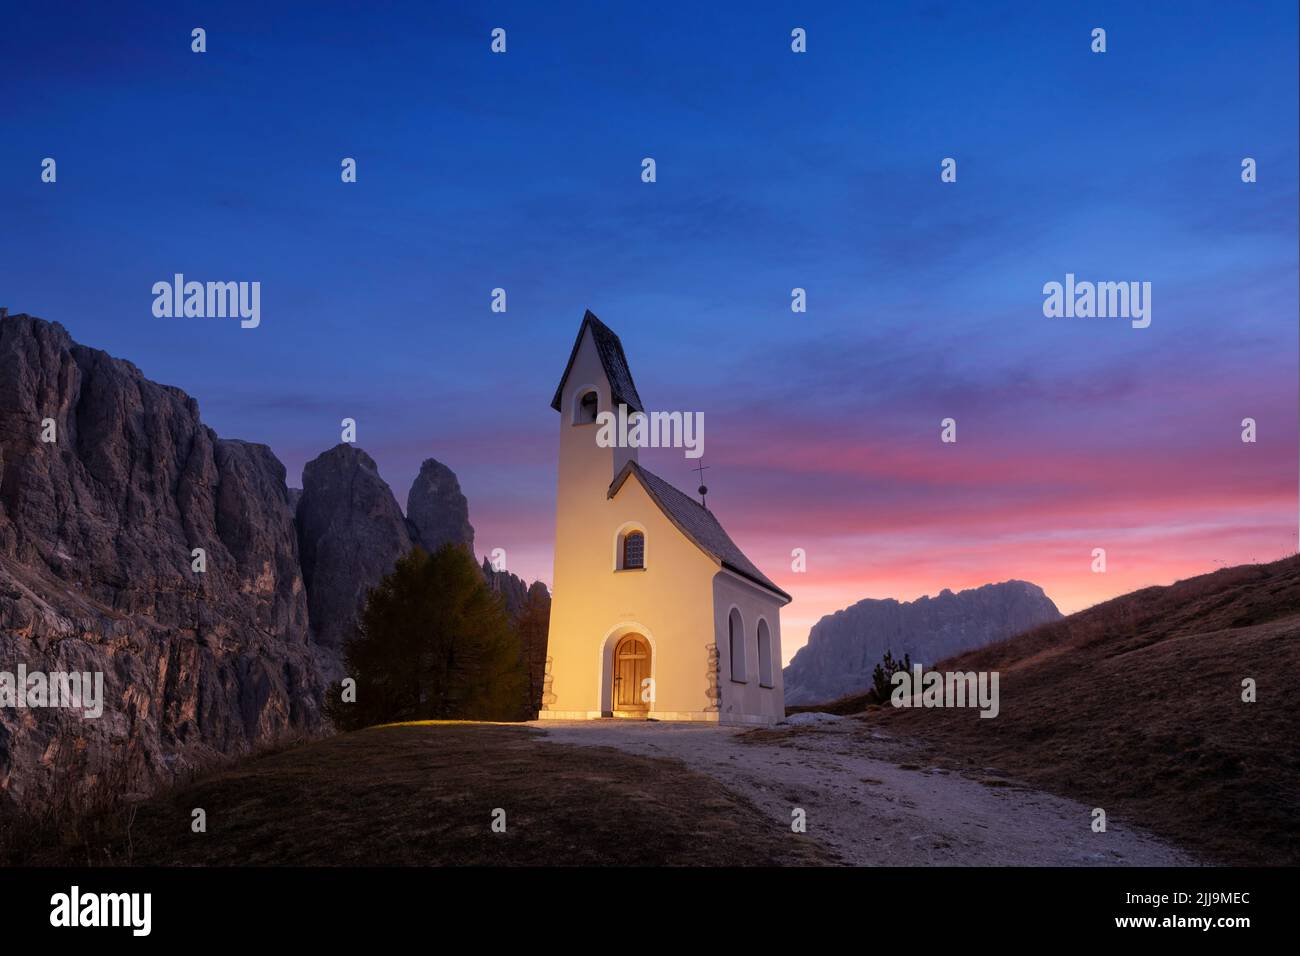 Vue incroyable sur la petite chapelle illuminée - Kapelle Ciapela sur le col de Gardena, les Dolomites italiens. Coucher de soleil coloré dans les Alpes Dolomites, Italie. Photographie de paysage Banque D'Images